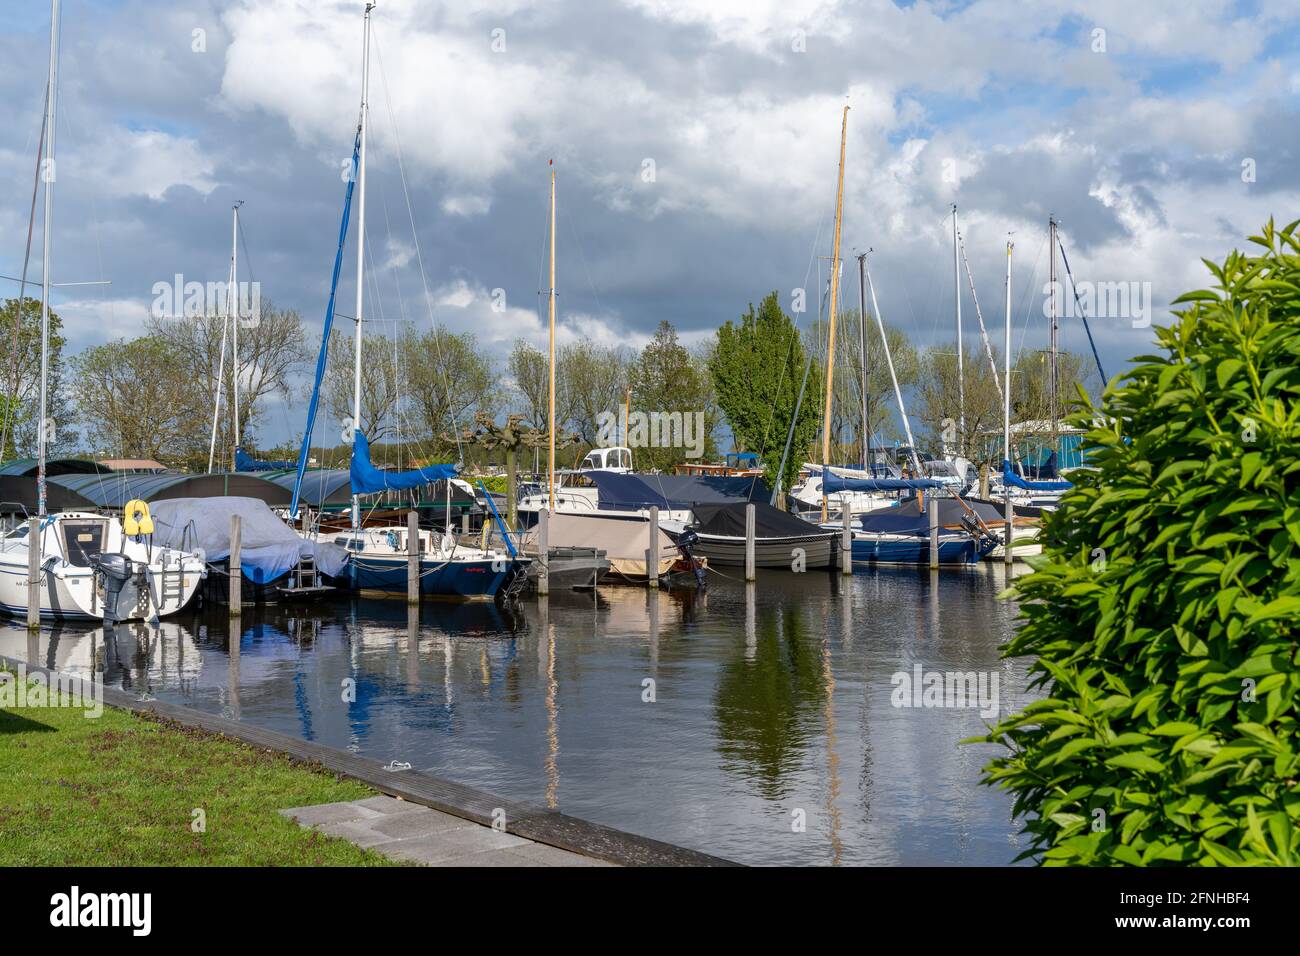 Sassenheim, Netherlands - 16 May, 2021: view of the harbor and marina at Sassenheim Stock Photo